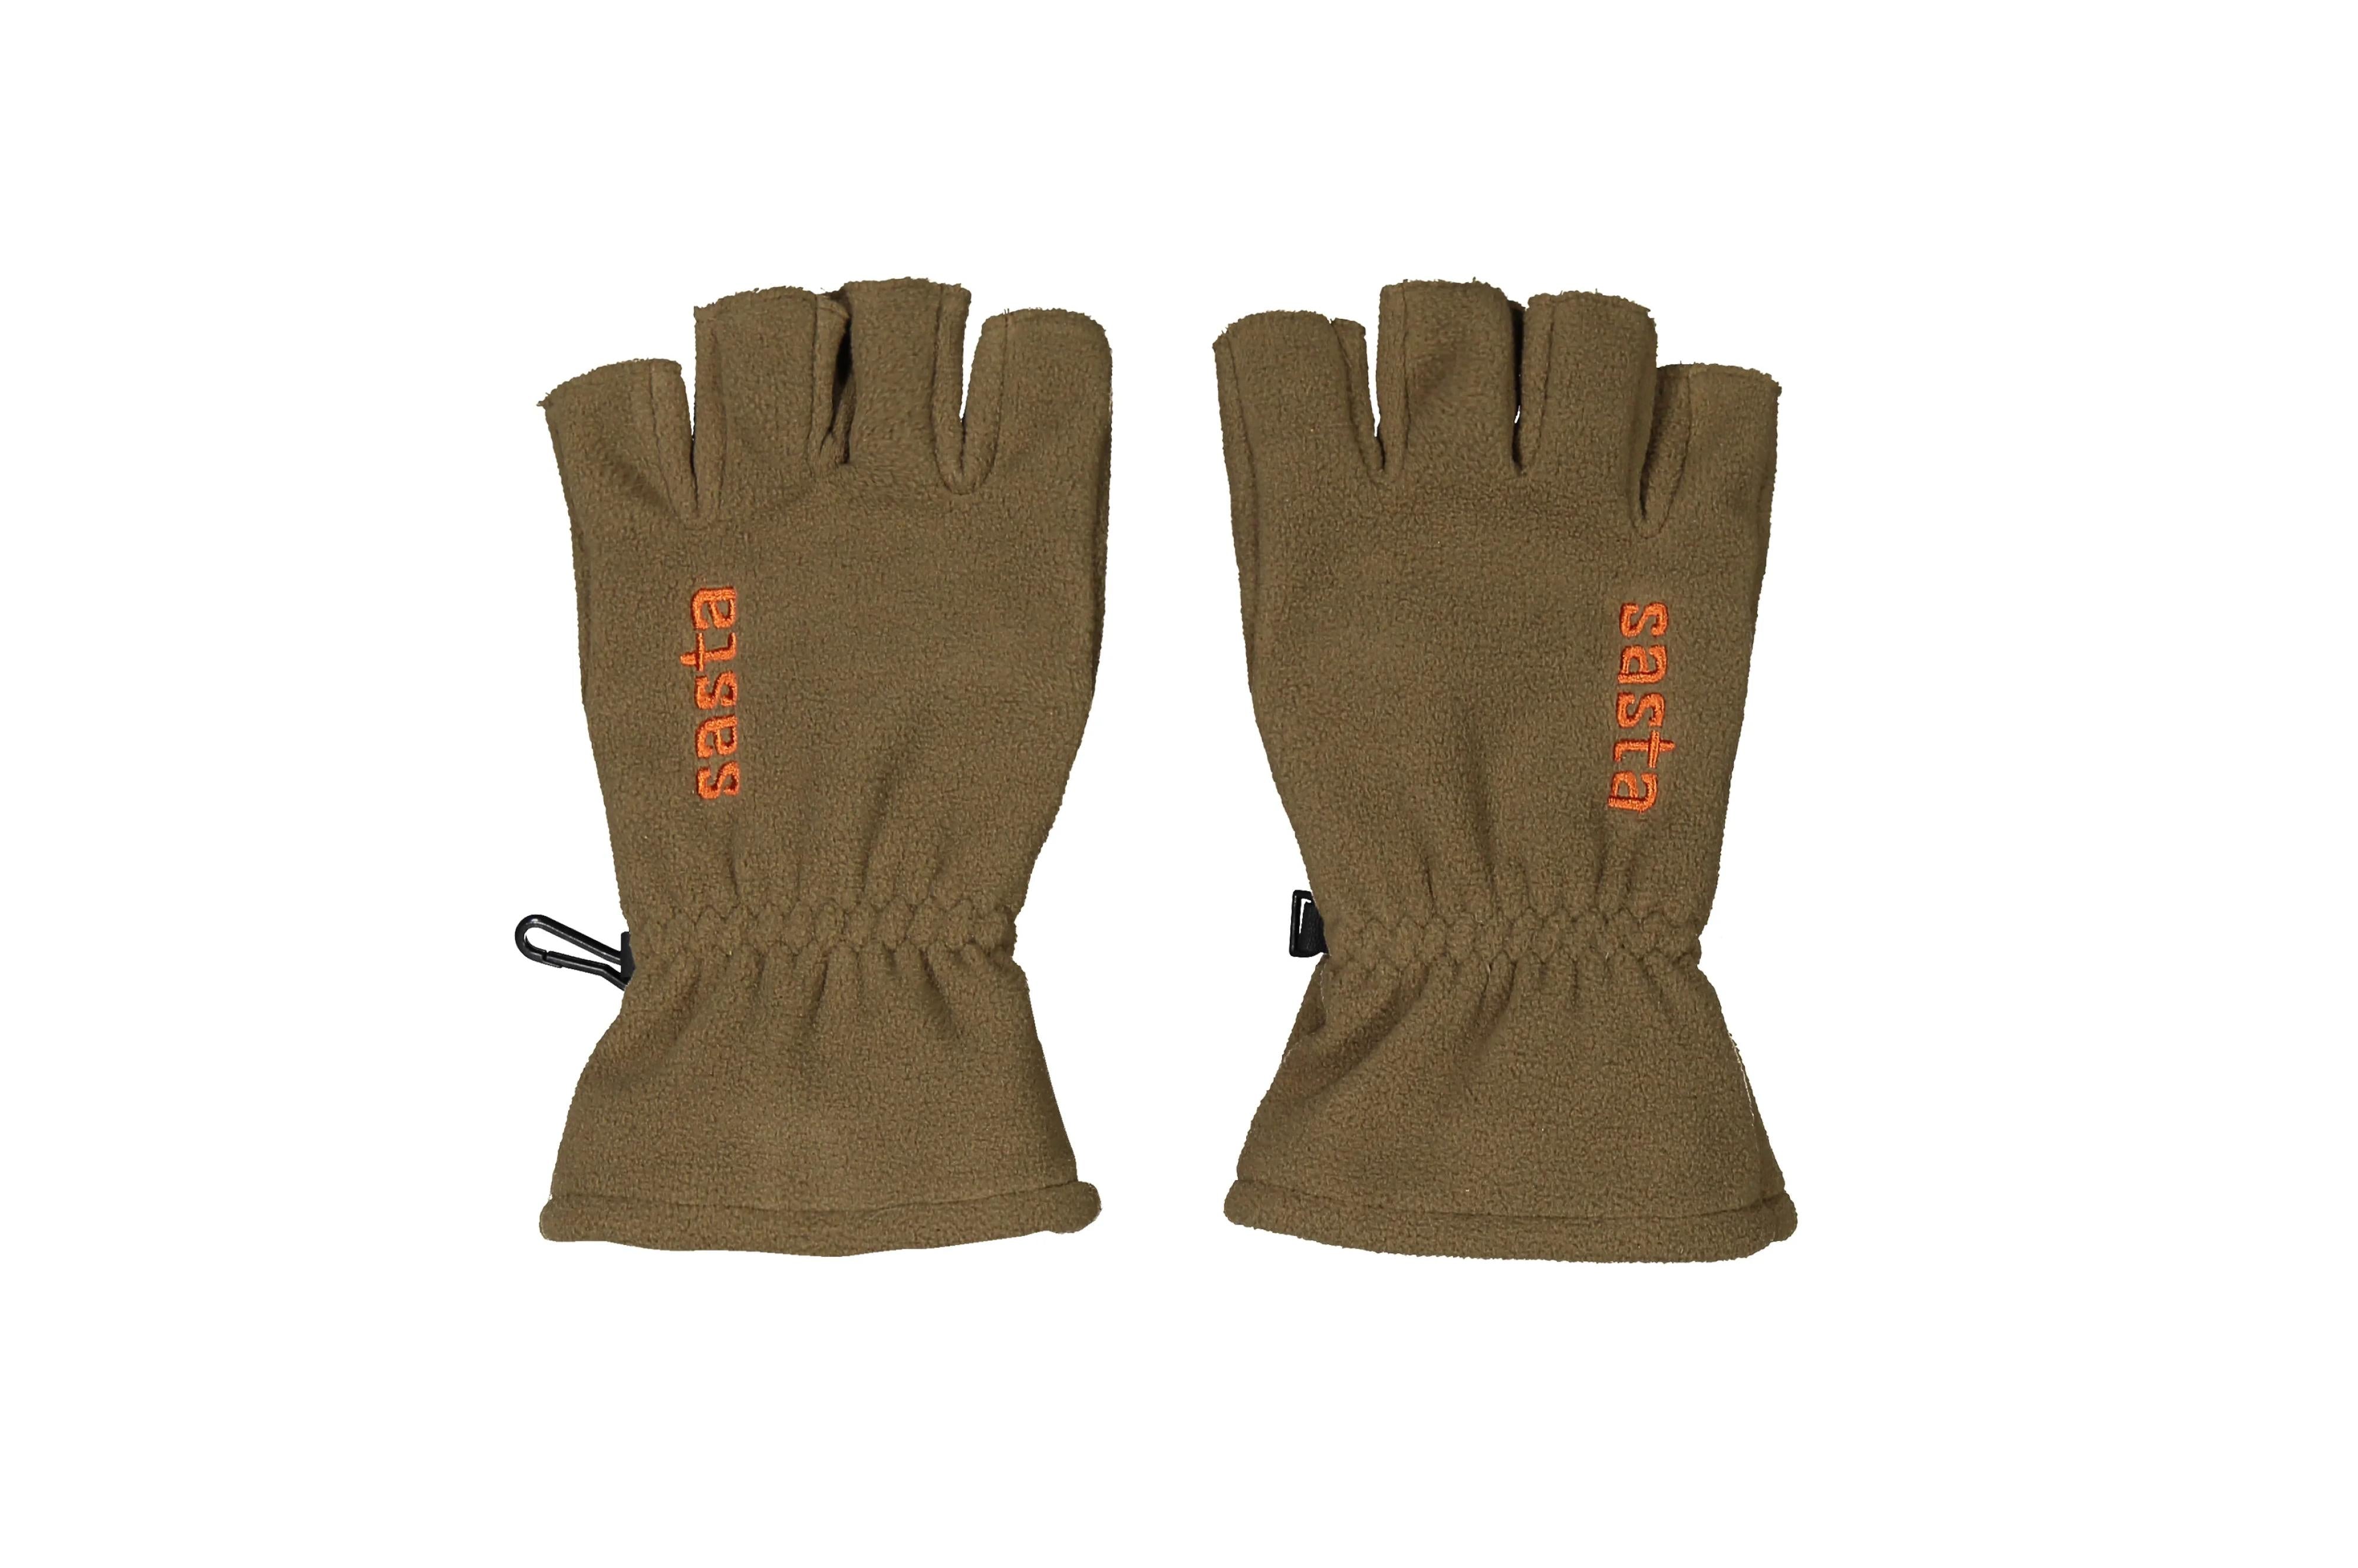 Oksa 1/2 finger gloves